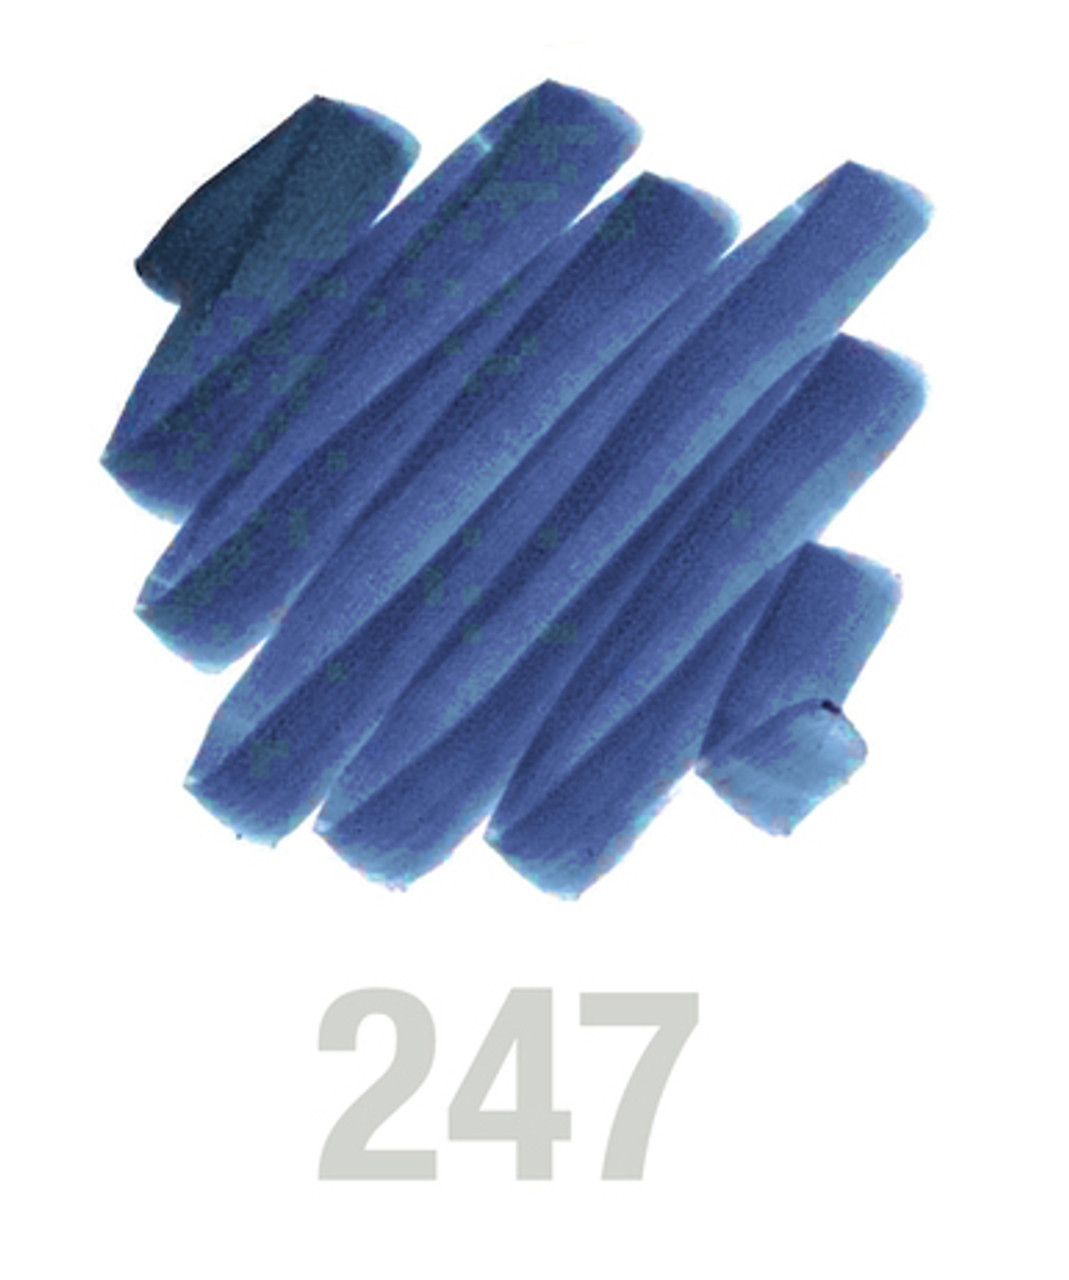 Pitt Artist Brush Pen, 247 Indanthrene Blue